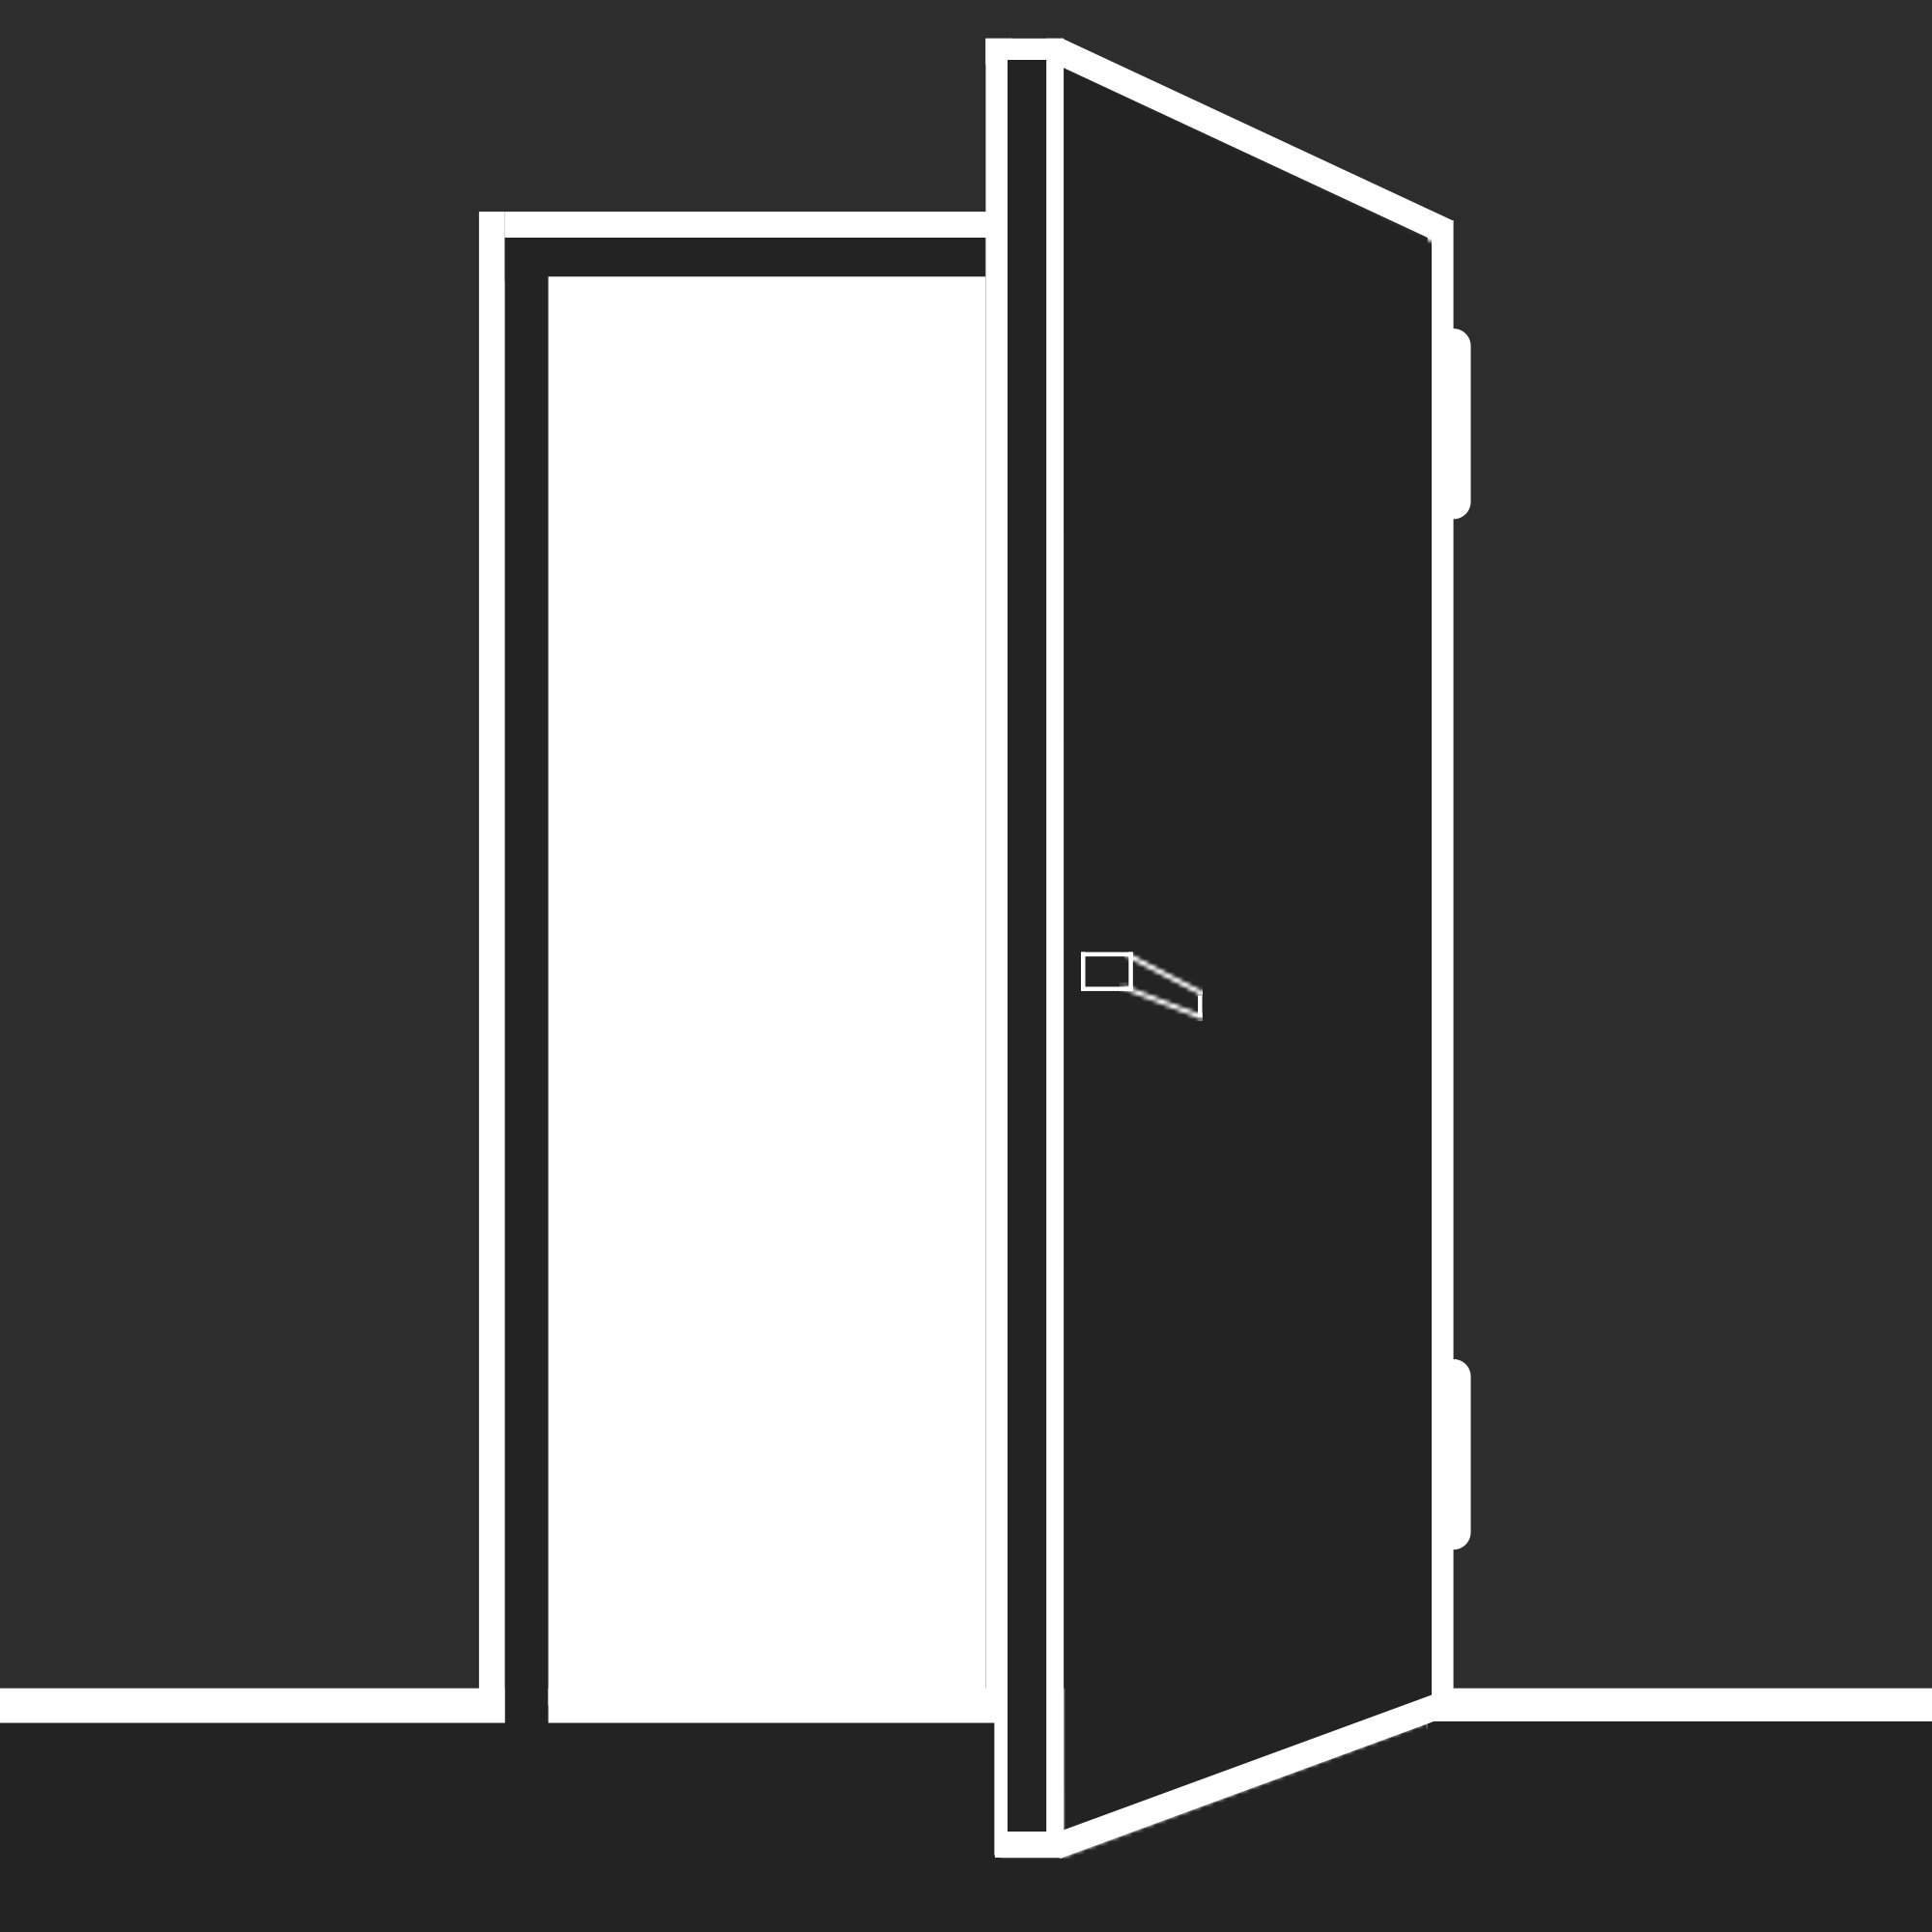 Оренбург открытая дверь. Дверь сбоку вектор. Открытая дверь. Логотип двери. Открытые двери вектор.